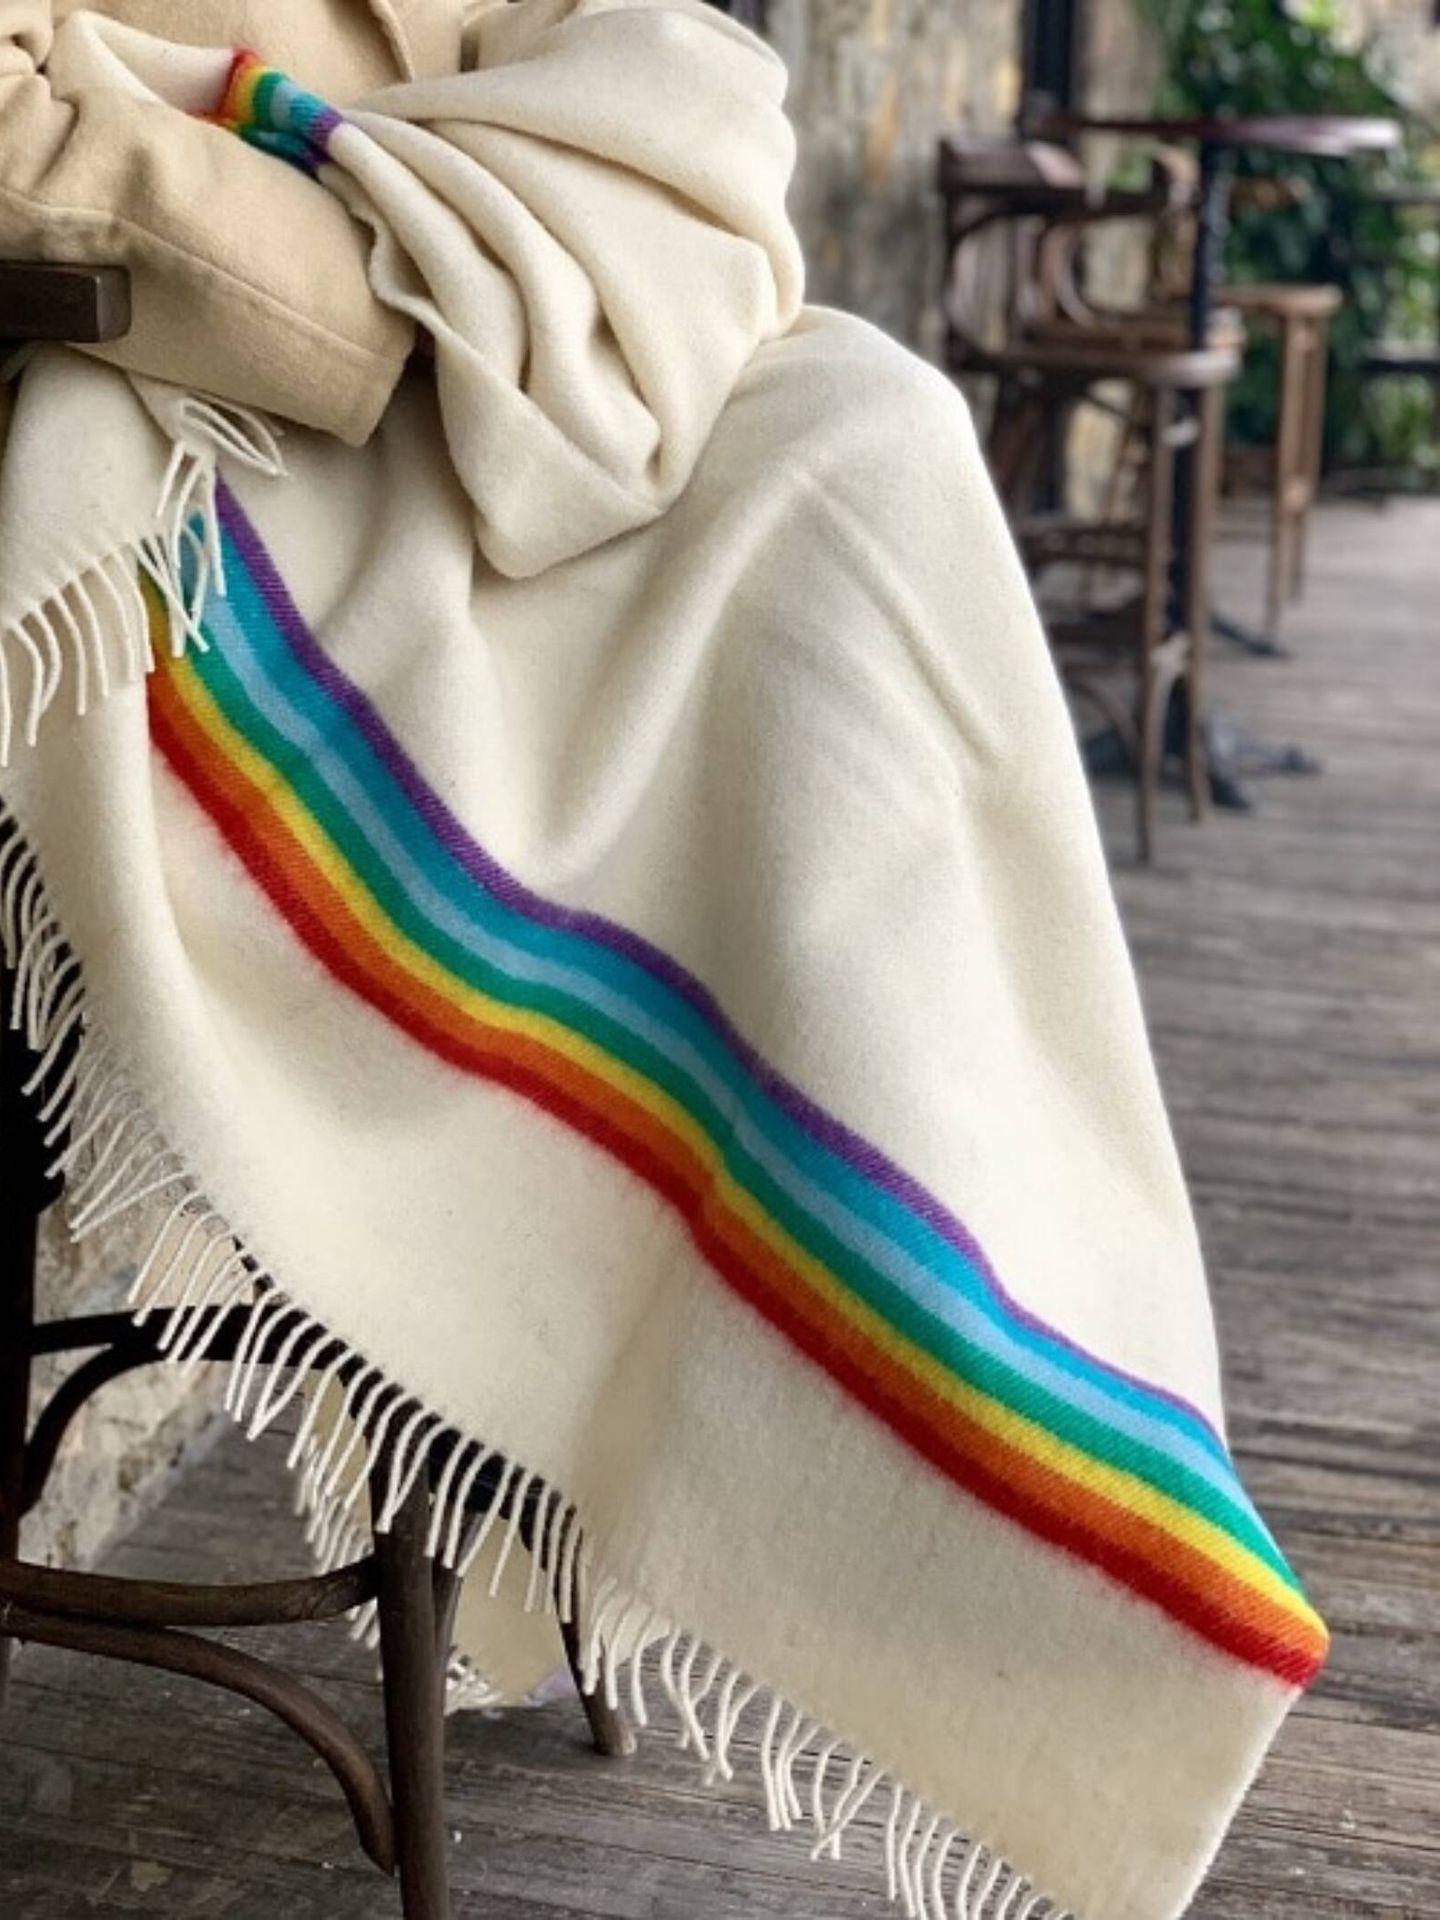 Apuesta por la artesanía para un souvenir decorativo diferente, como esta manta de lana. (Cortesía/Moncloa de San Lázaro)